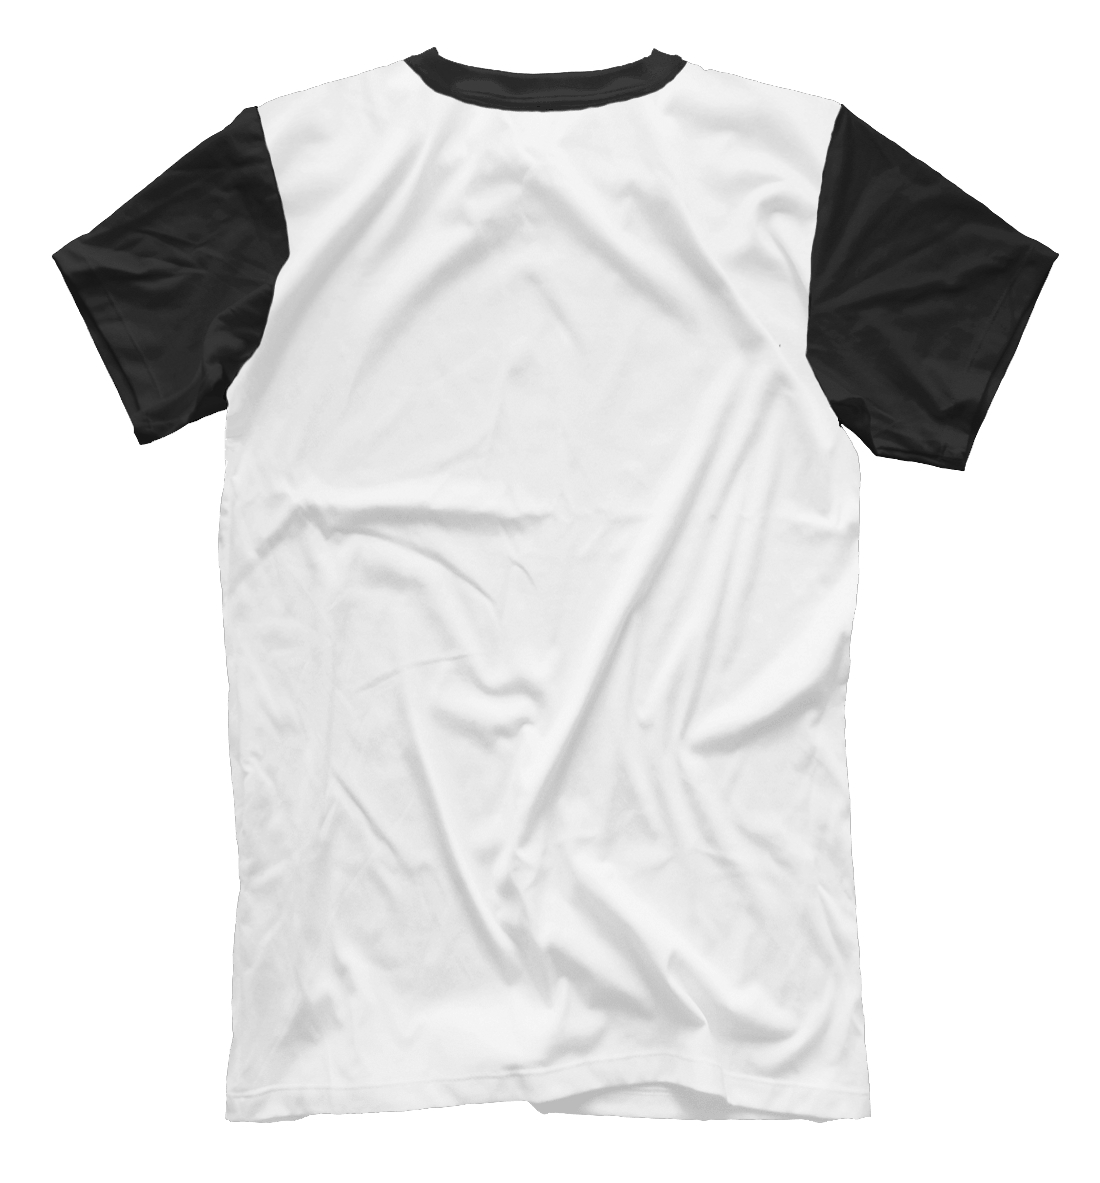 Мужская футболка с принтом Viktor-black  - фото 2-спина